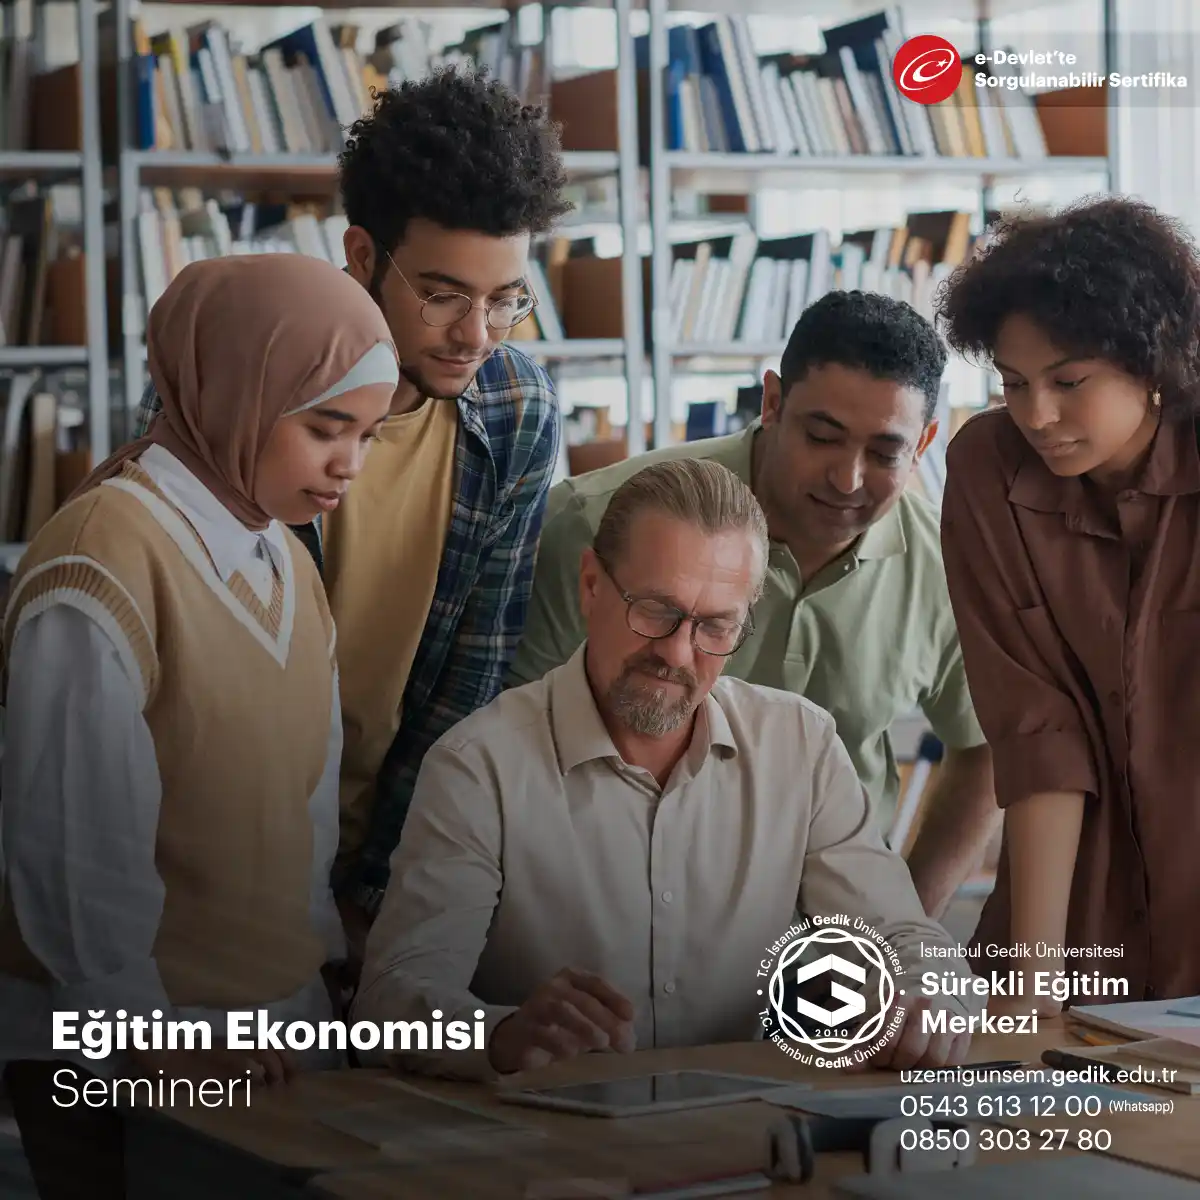 Eğitim Ekonomisi Semineri, eğitim alanında çalışan profesyoneller ve ilgili paydaşlar için önemli bir eğitim programıdır.